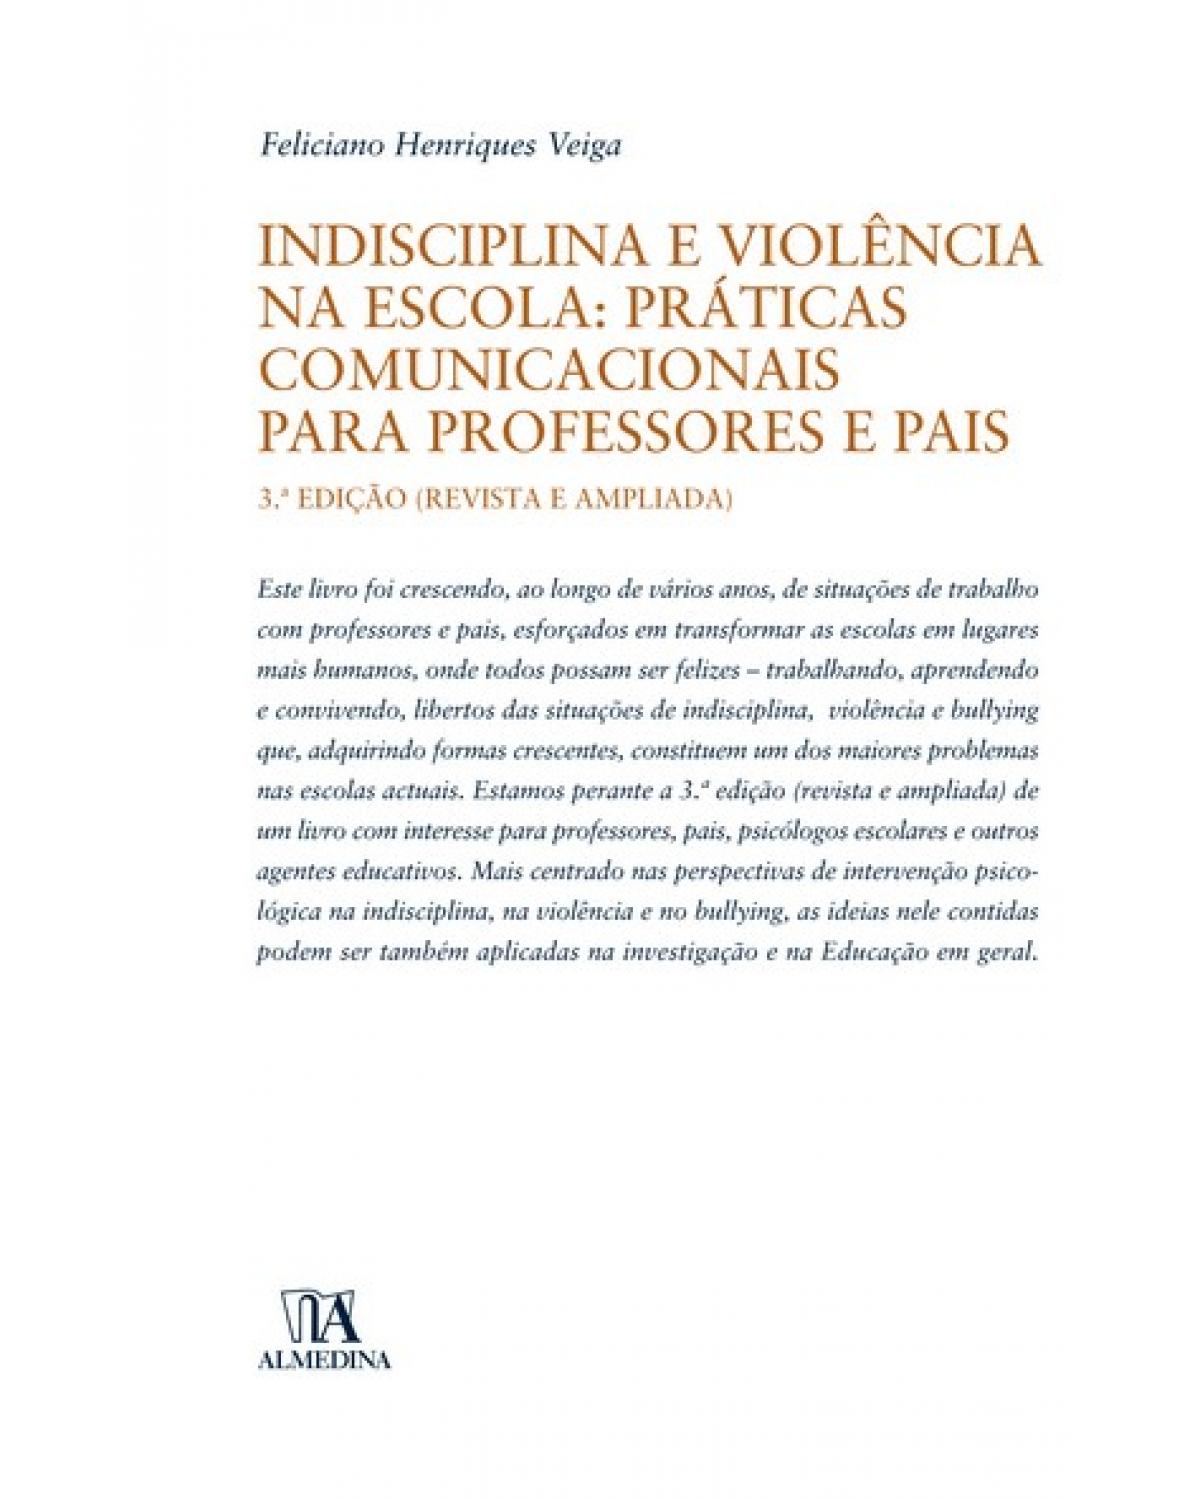 Indisciplina e violência na escola - práticas comunicacionais para professores e pais - 3ª Edição | 2007